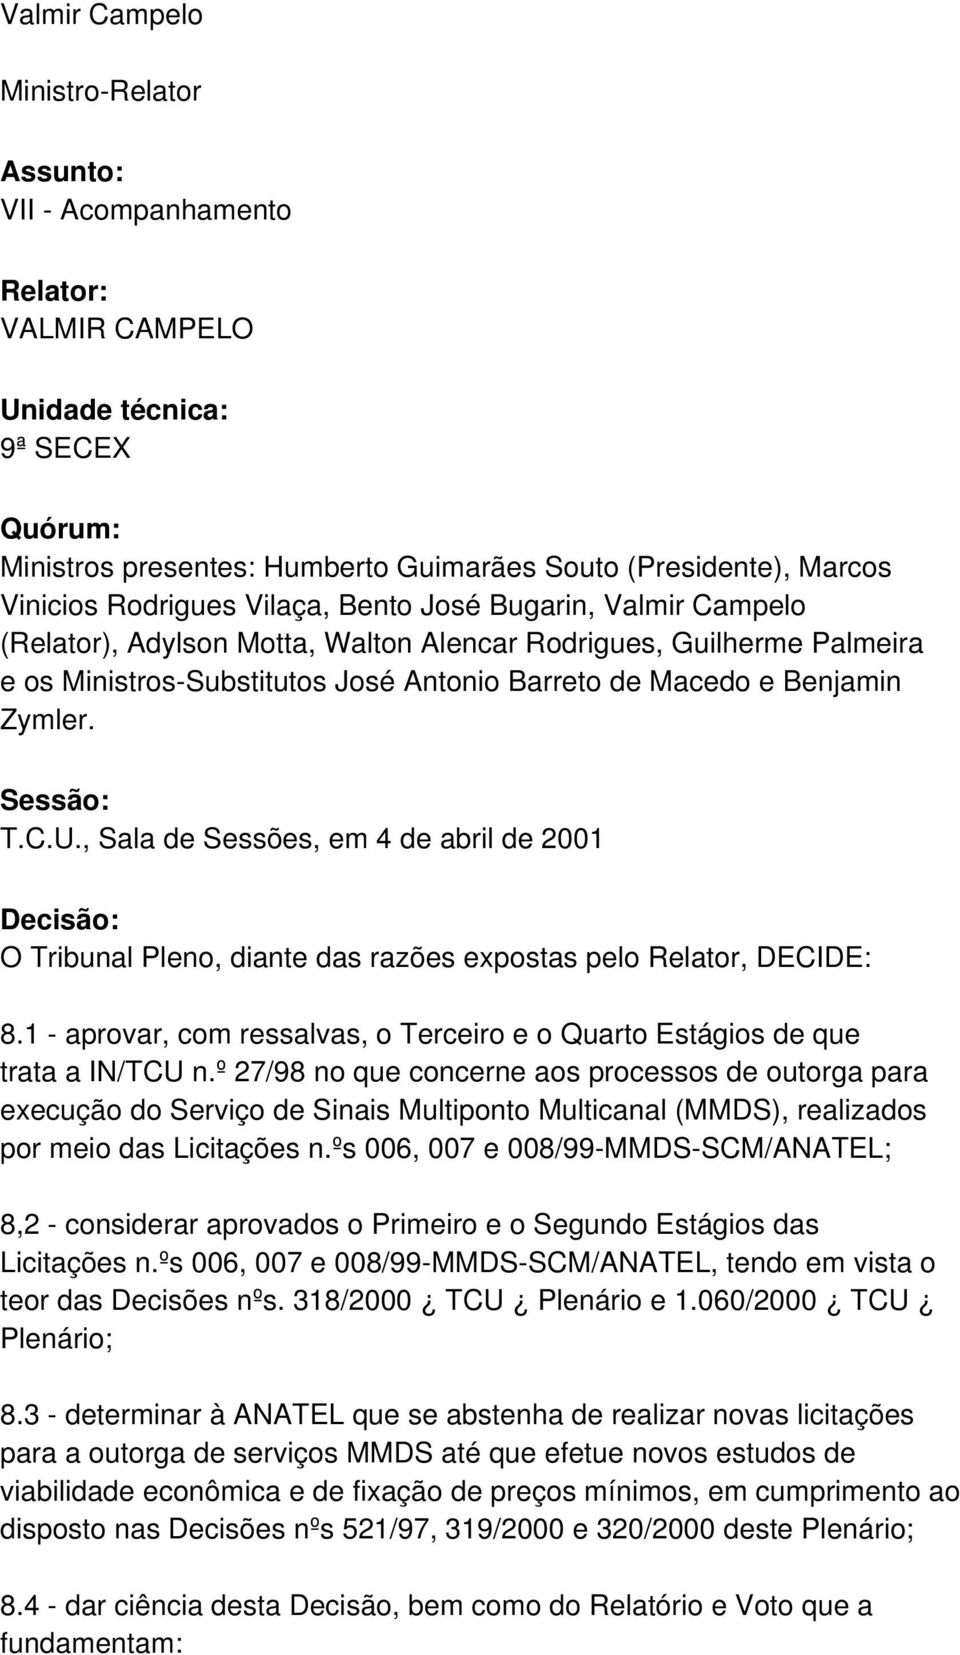 Sessão: T.C.U., Sala de Sessões, em 4 de abril de 2001 Decisão: O Tribunal Pleno, diante das razões expostas pelo Relator, DECIDE: 8.